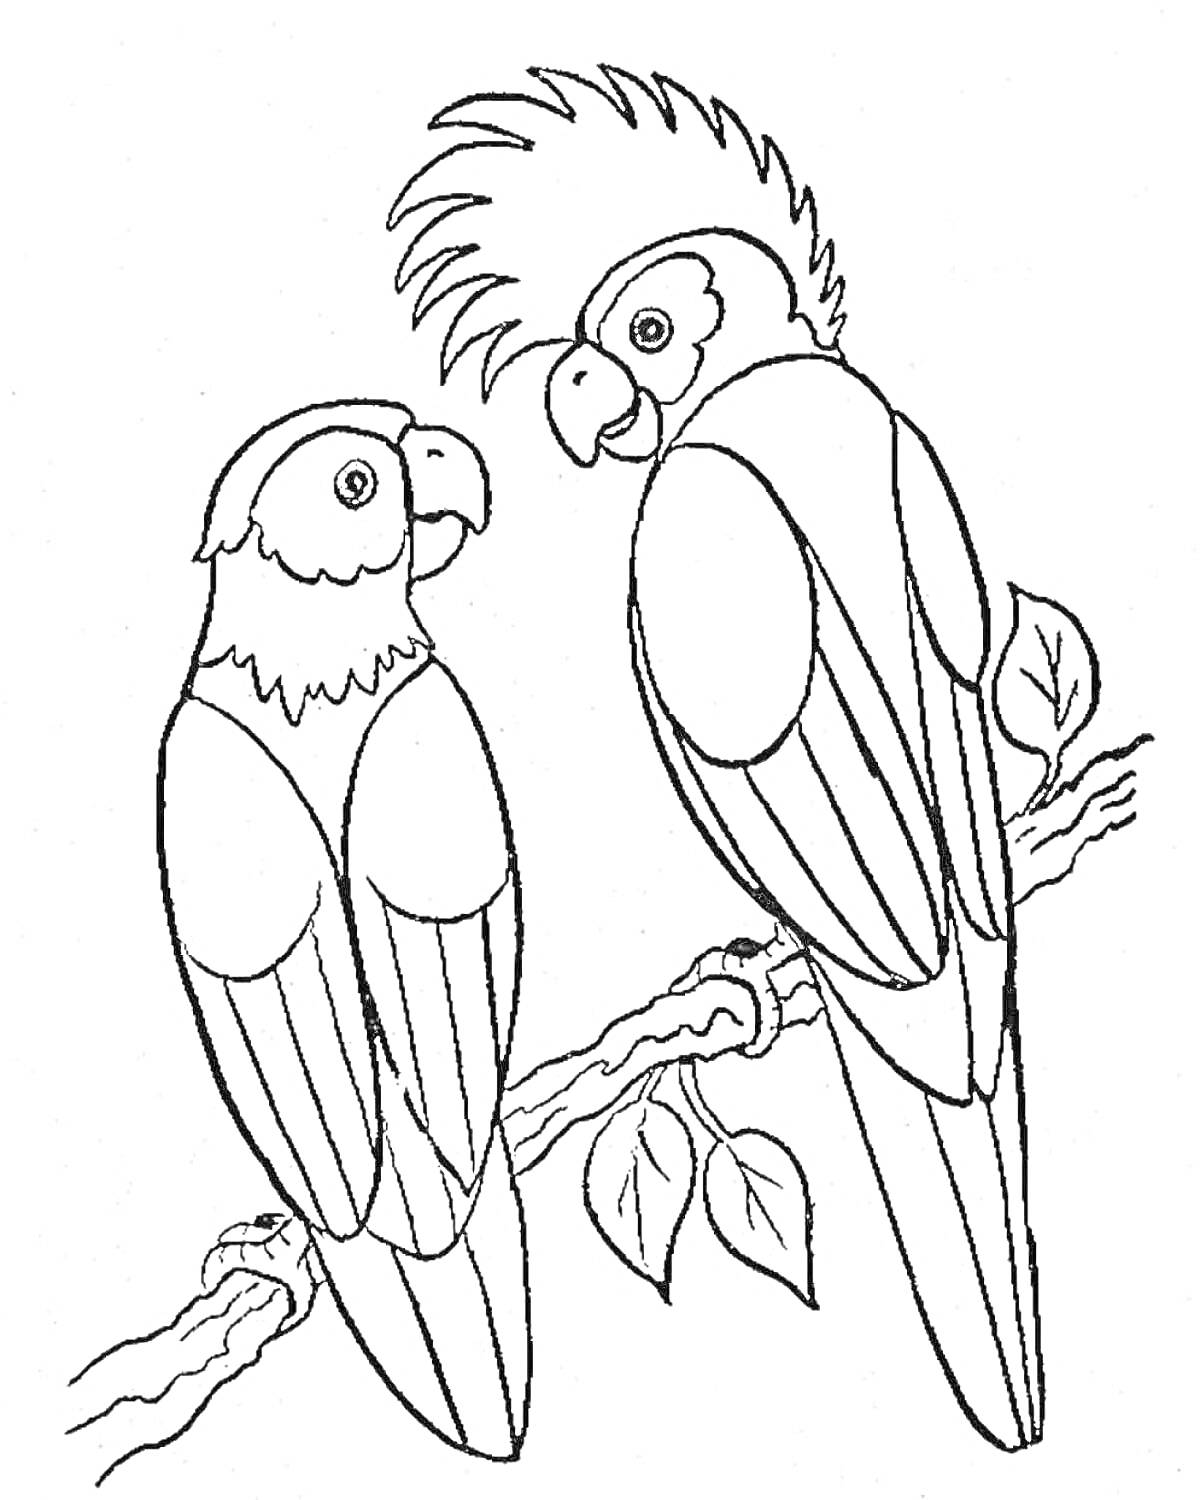 Раскраска Два попугая на ветке с листьями